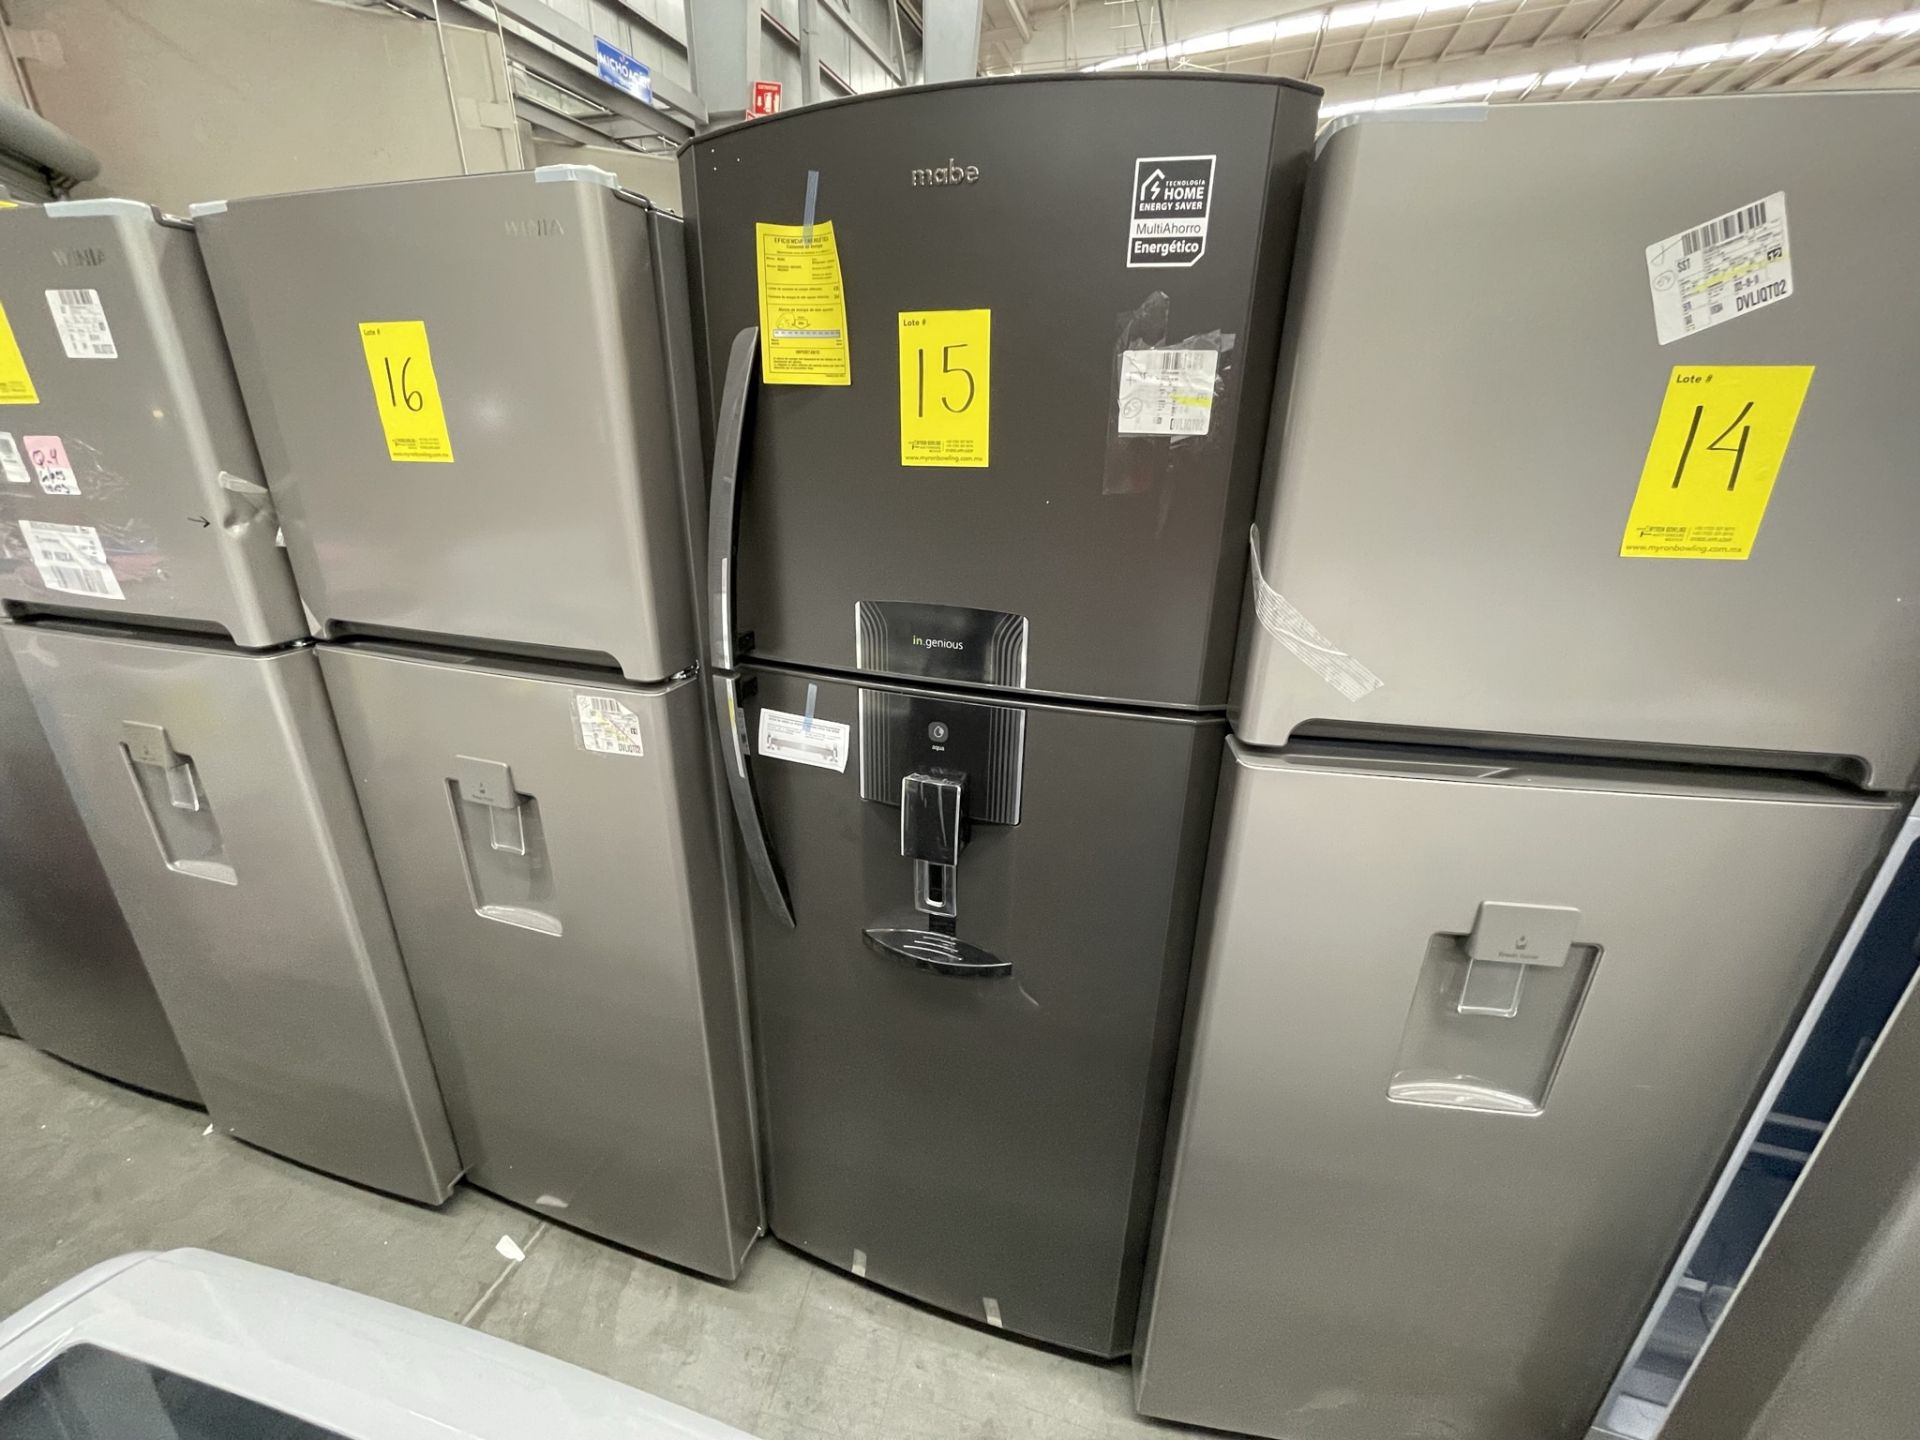 (EQUIPO NUEVO) 1 Refrigerador Con Dispensador De Agua Marca MABE, Modelo RME360FDMRDA, Serie 2210B8 - Image 6 of 9